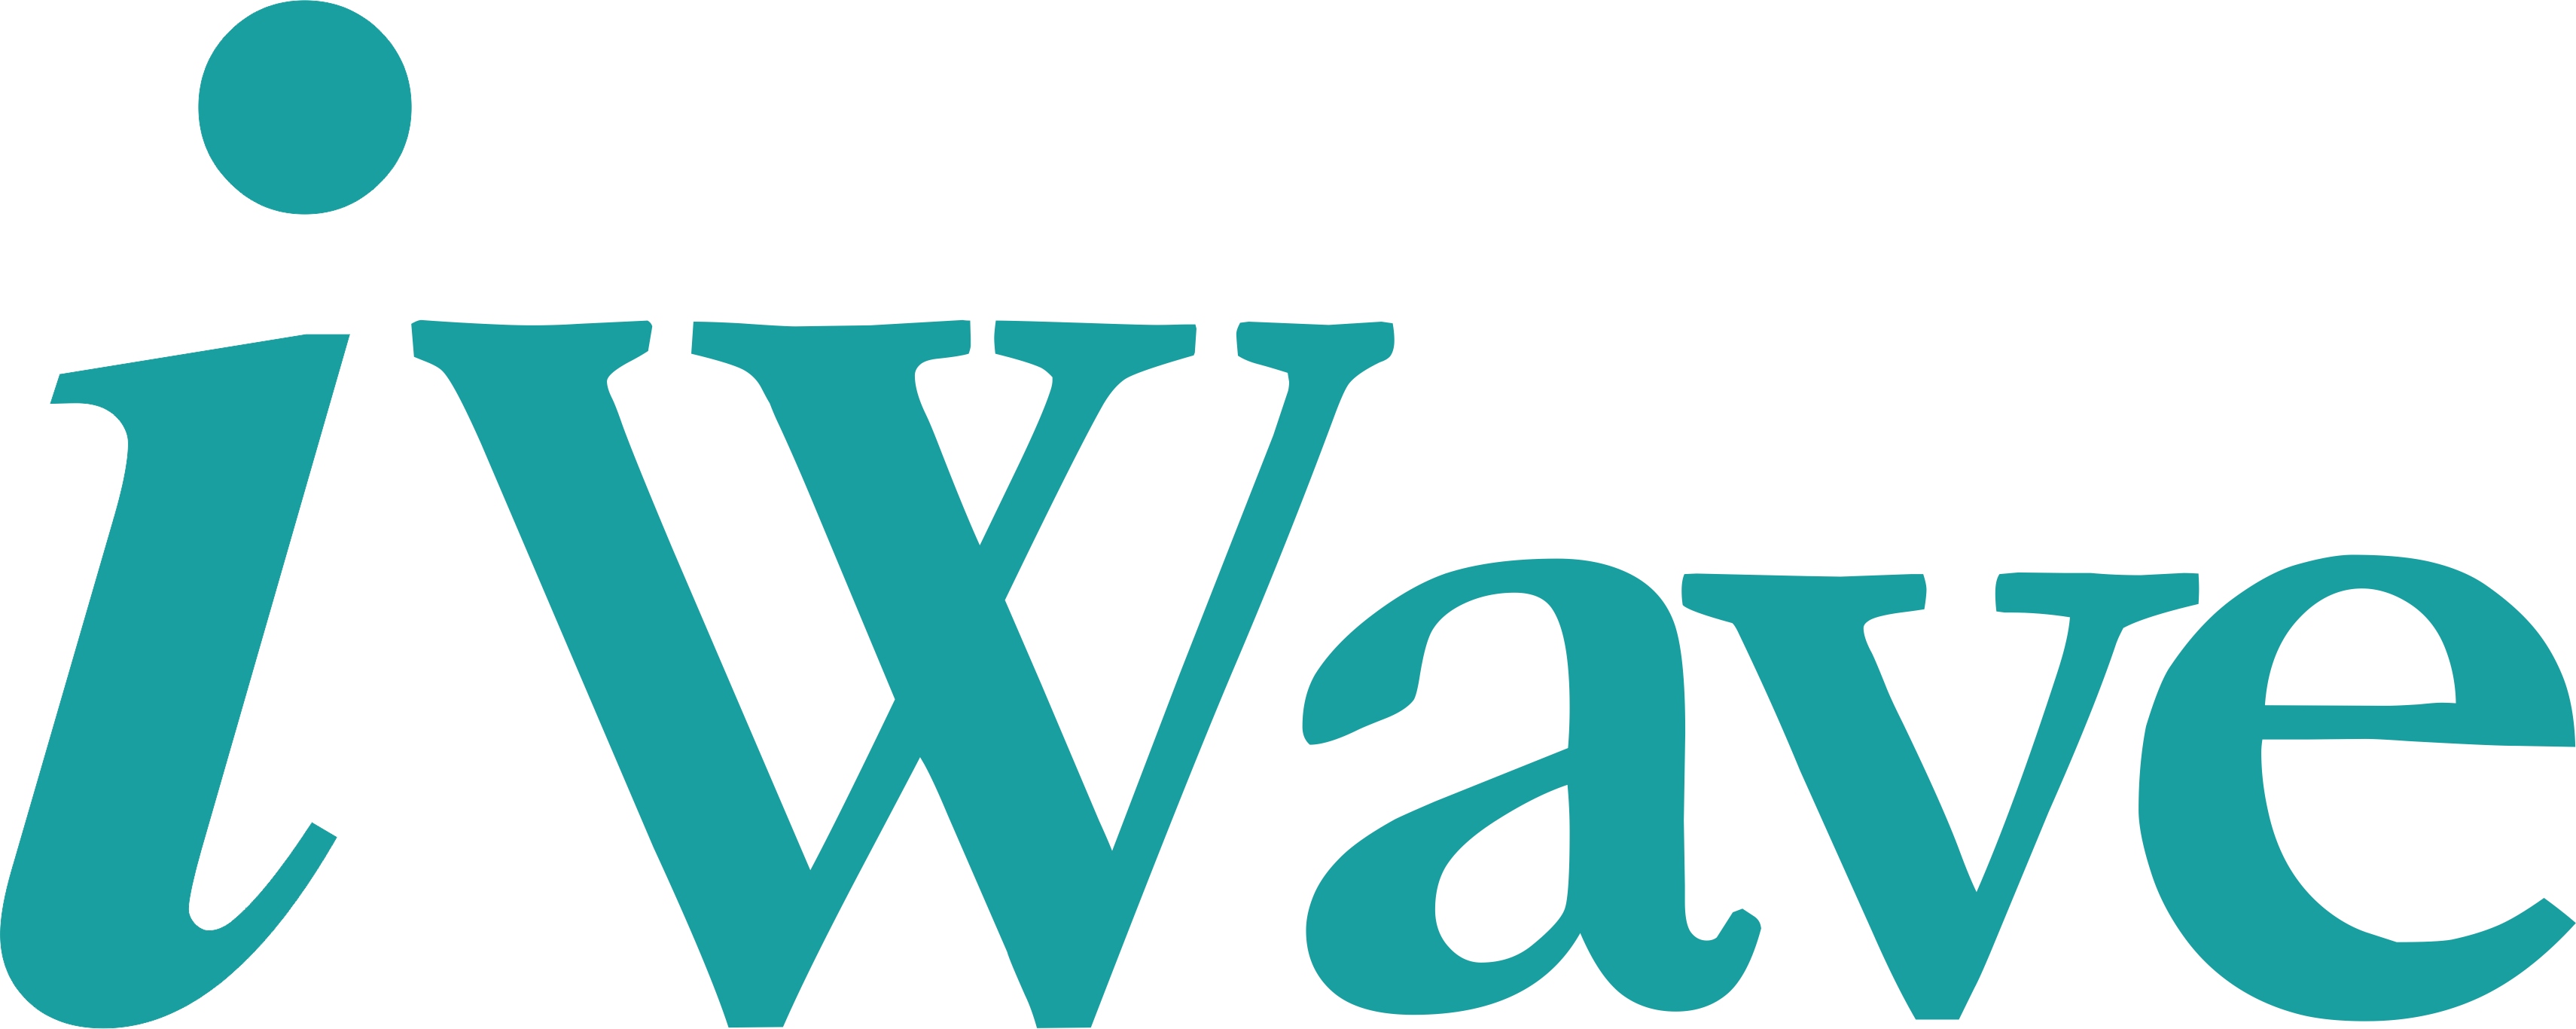 Iwave logo